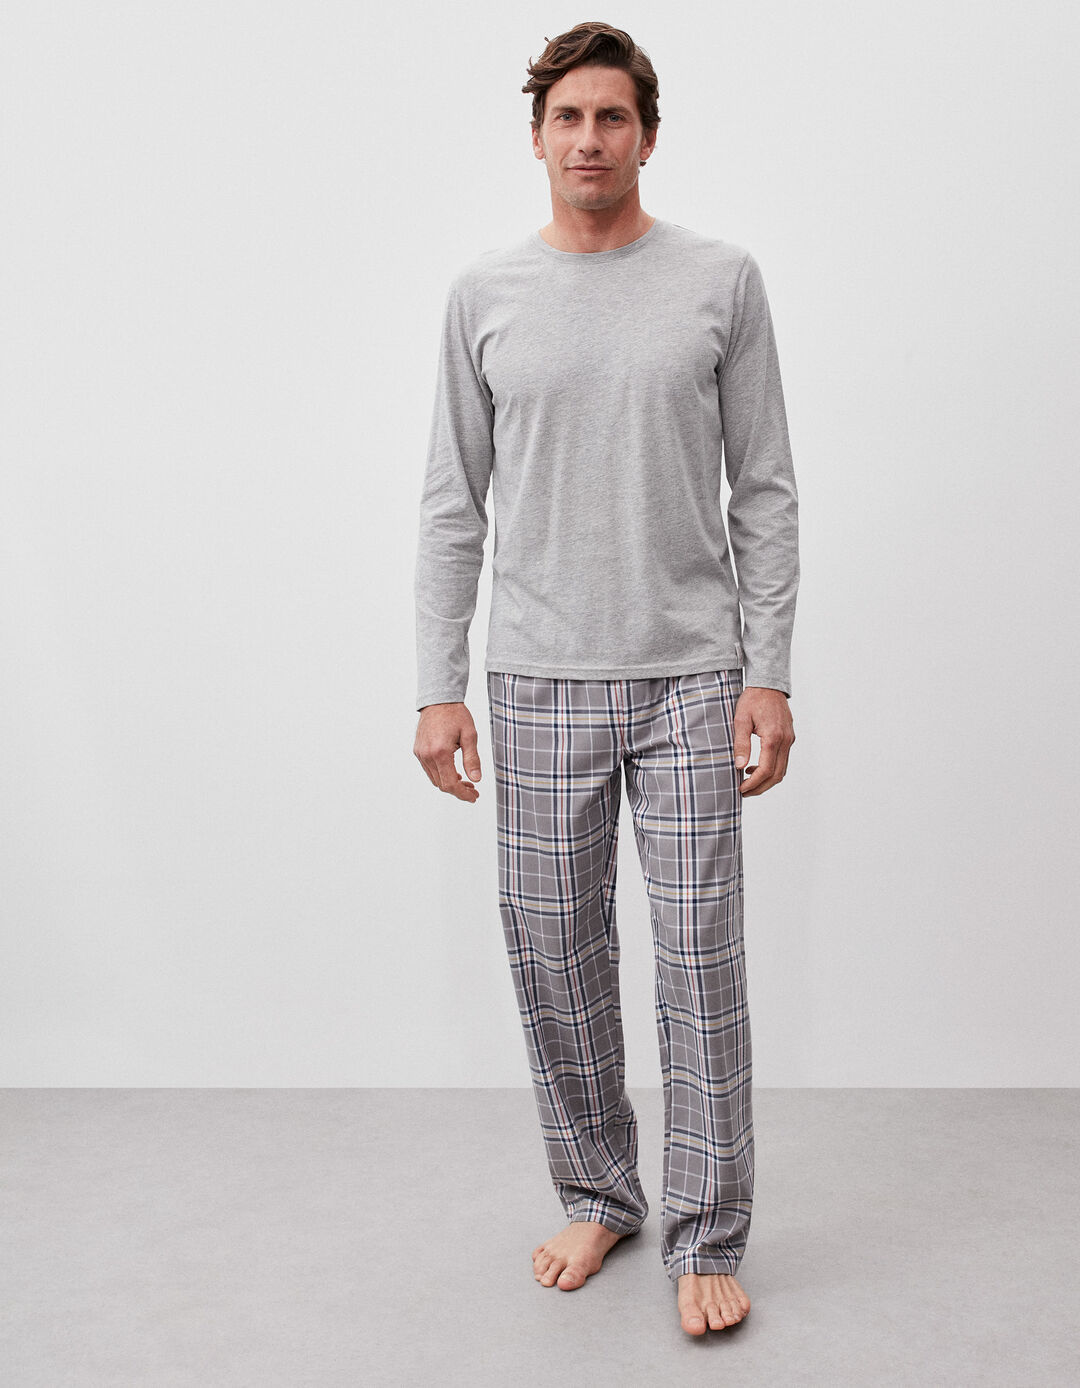 Plaid Pajamas, Men, Gray